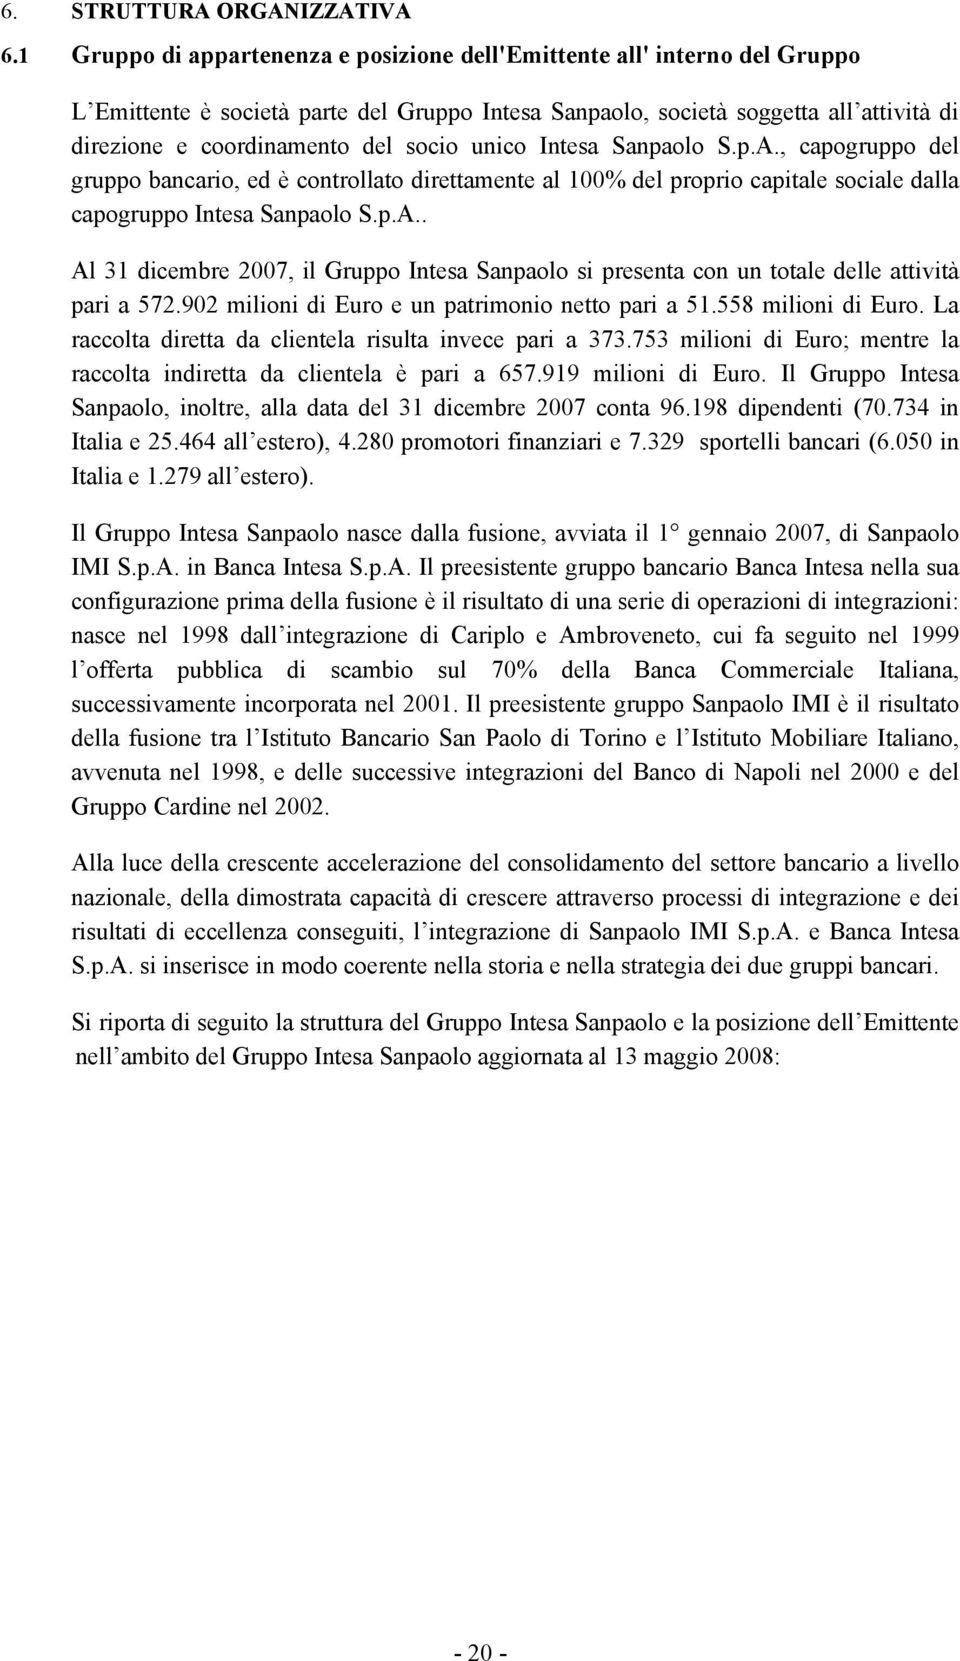 socio unico Intesa Sanpaolo S.p.A., capogruppo del gruppo bancario, ed è controllato direttamente al 100% del proprio capitale sociale dalla capogruppo Intesa Sanpaolo S.p.A.. Al 31 dicembre 2007, il Gruppo Intesa Sanpaolo si presenta con un totale delle attività pari a 572.